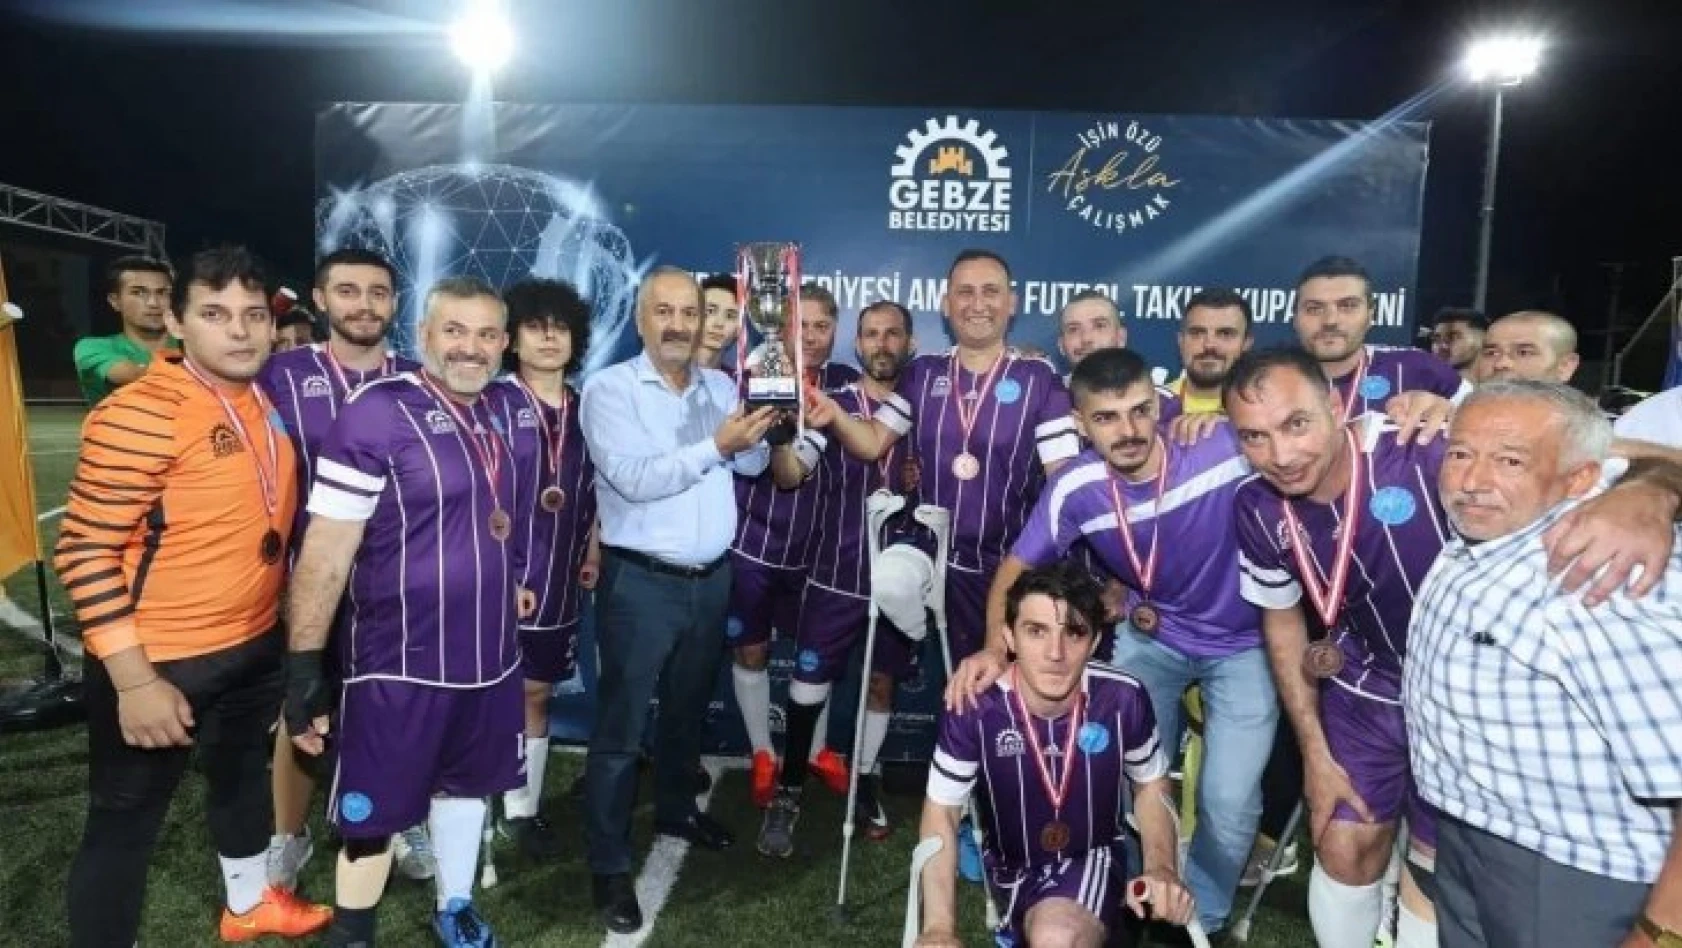 Gebze Belediyesi Ampute Futbol Takımı, 1. Lig'e yükseldi